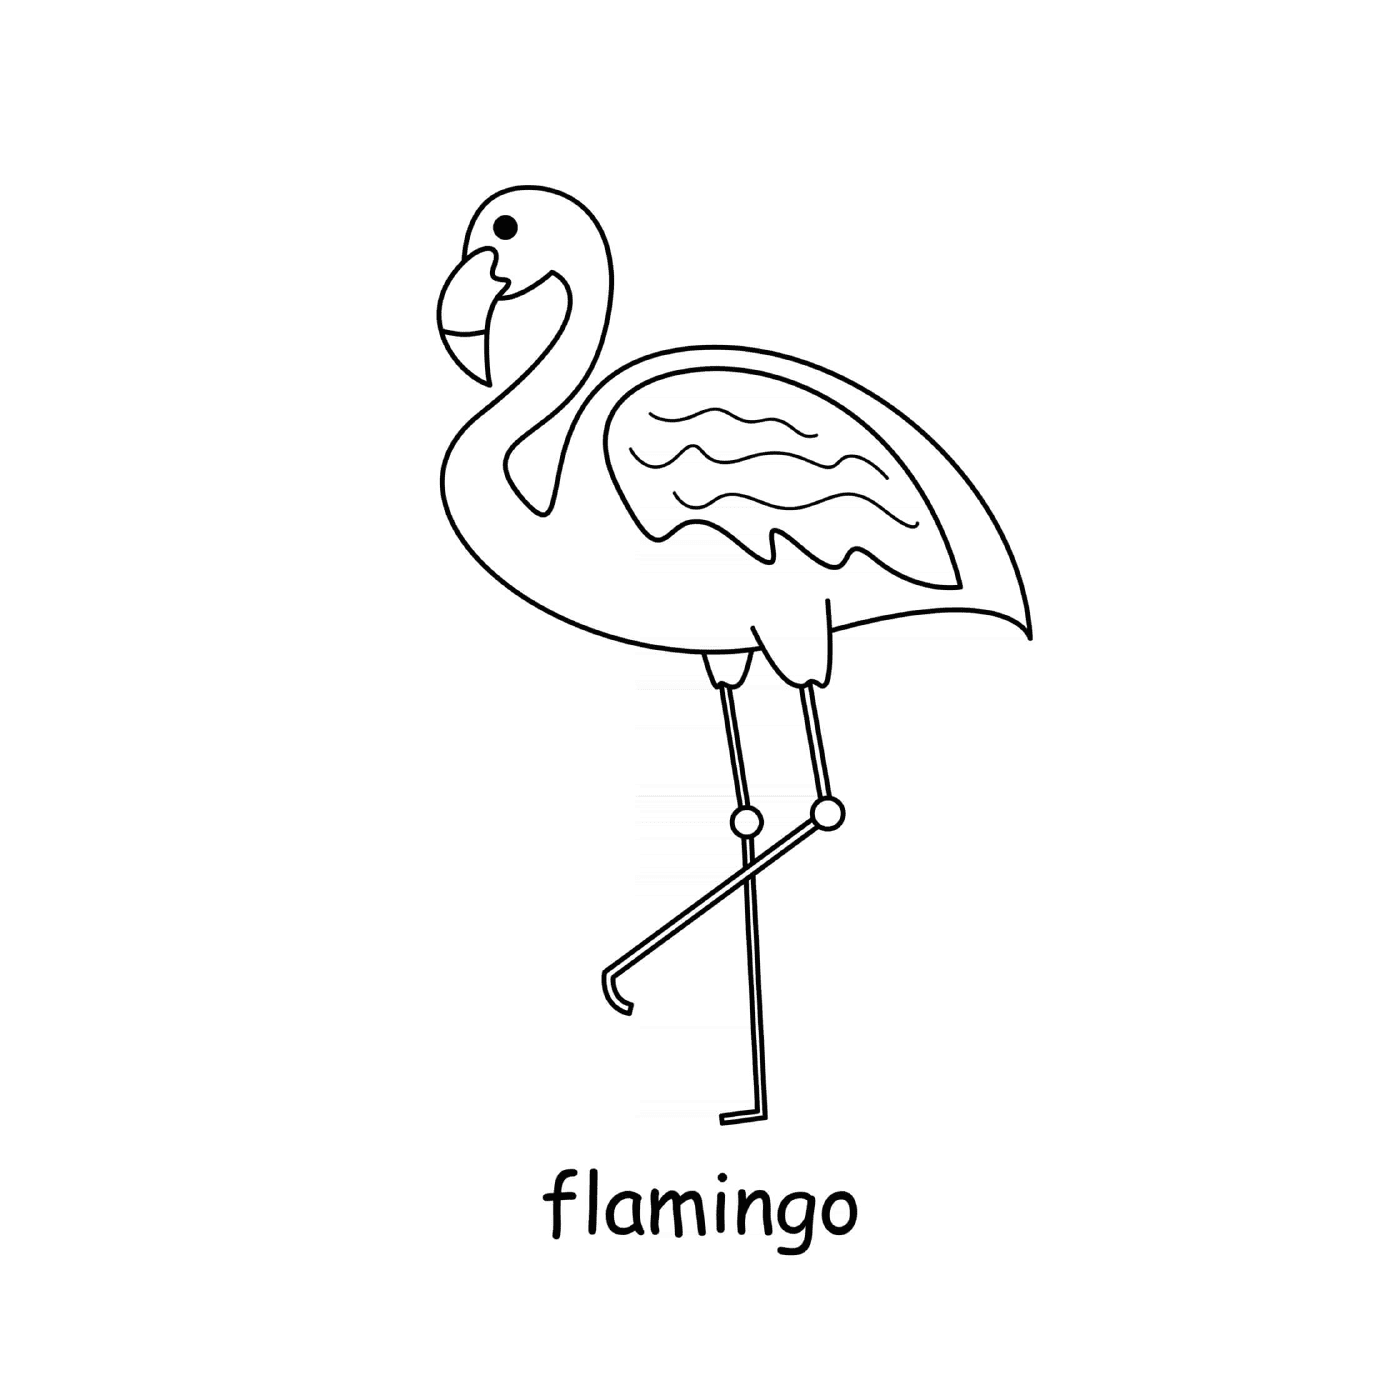  Flamingo-Flamingo-Flamingo-Flamingo-Flamingo-Flamingo-Flamingo-Flamingo-Flamingo-Flamingo-Flamingo-Flamingo-Flamingo-Flamingo-Flamingo-Flamingo-Flamingo-Flamingo-Flamingo-Flamingo-Flamingo-Flamingo-Flamingo-Flamingo-Flamingo-Flamingo-Flamingo-Flamingo-Flamingo-Flamingo-Flamingo-Flamingo 